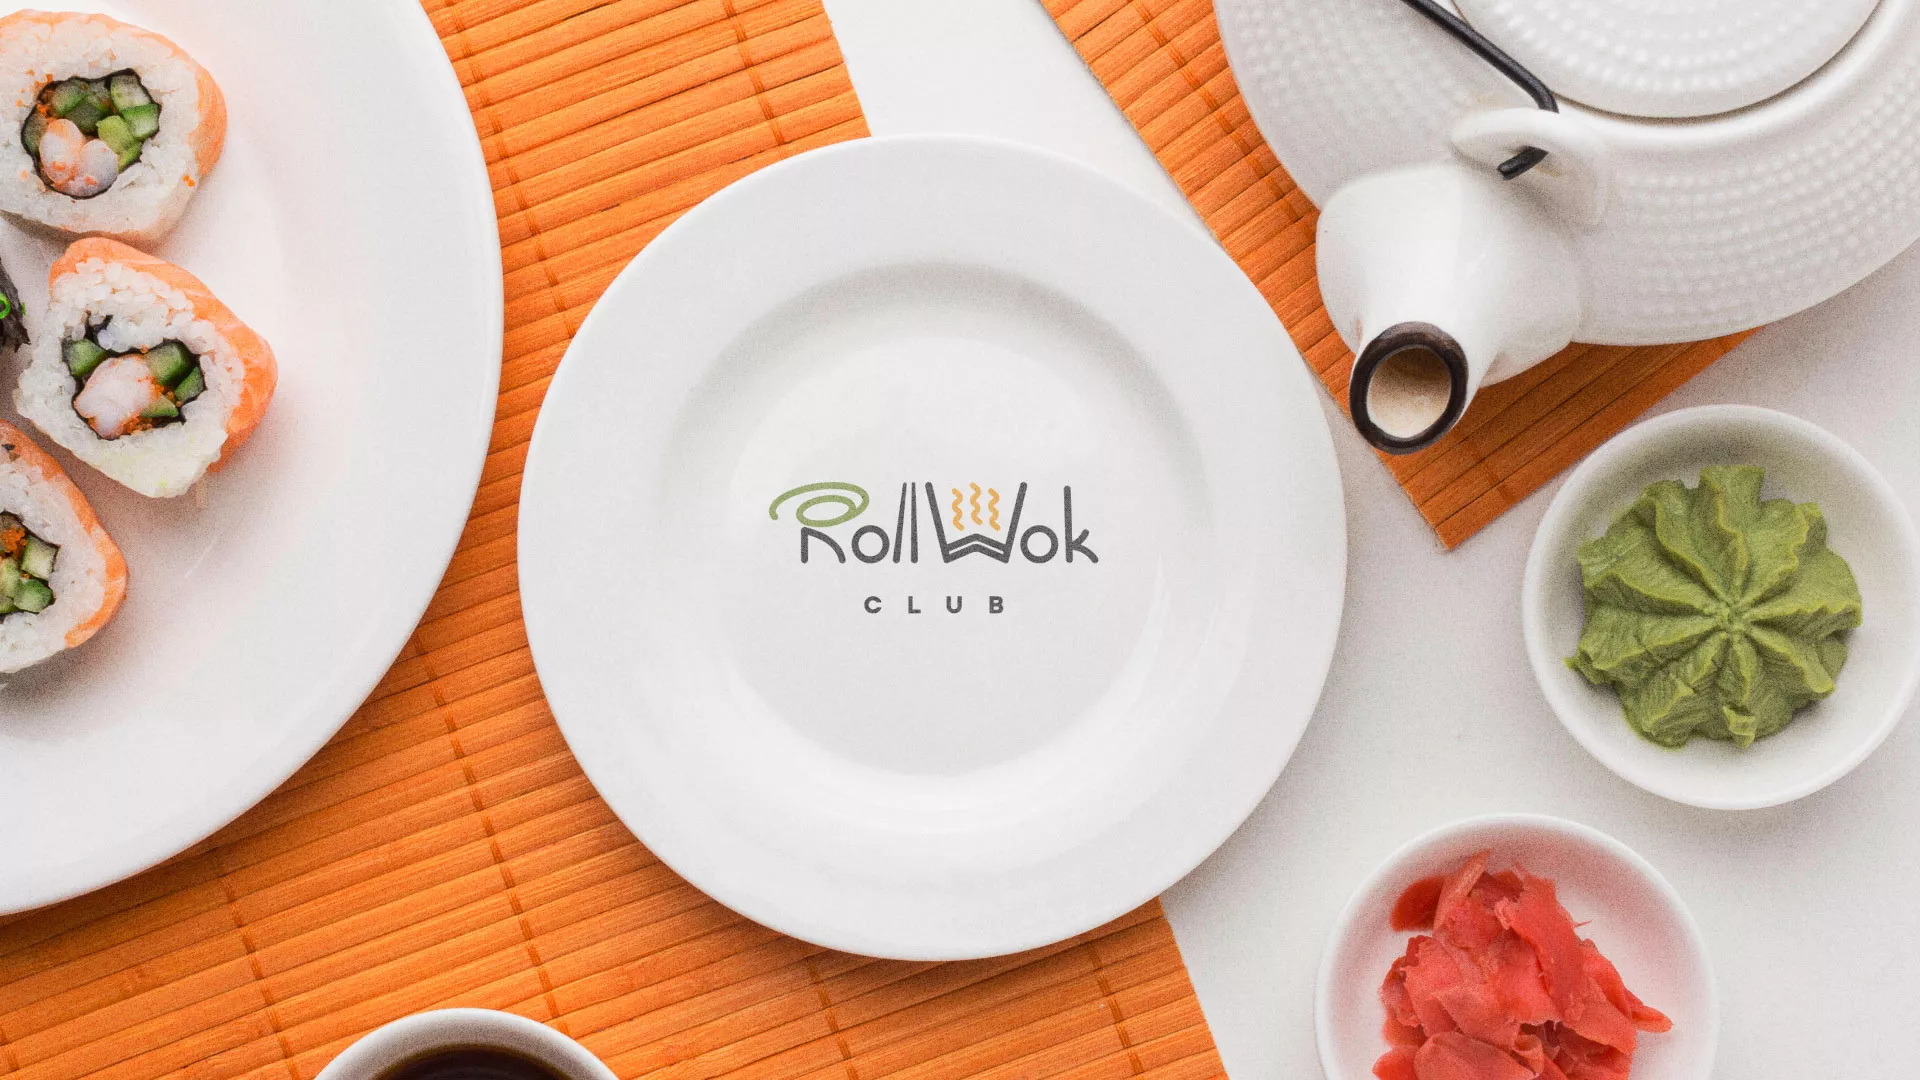 Разработка логотипа и фирменного стиля суши-бара «Roll Wok Club» в Заполярном